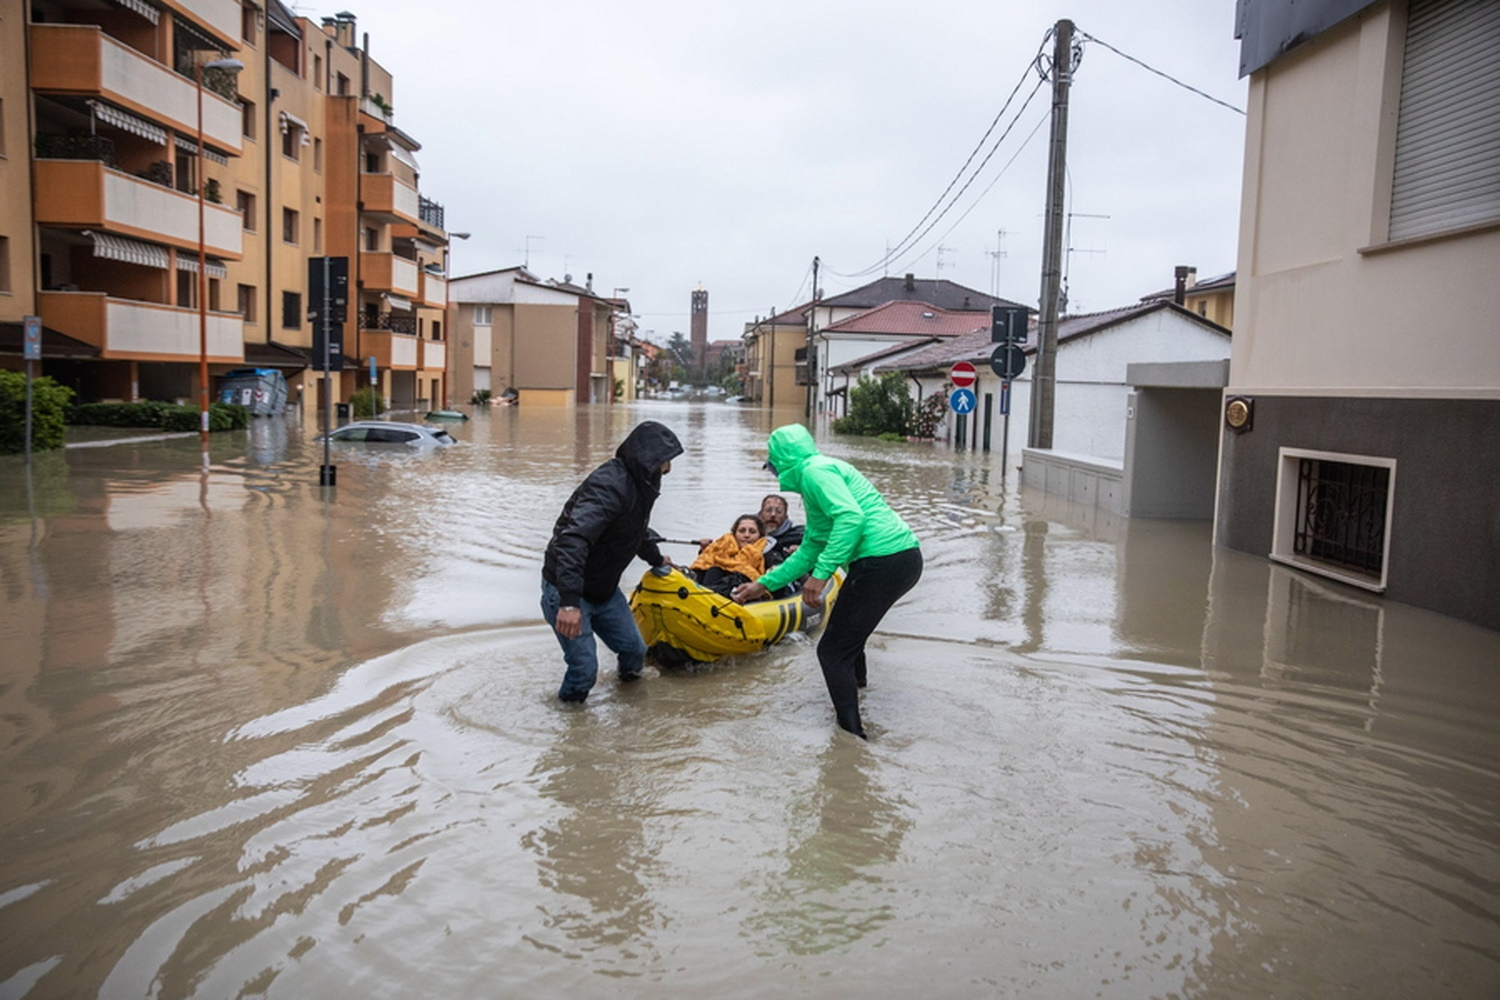 Ιταλία: Τραγικές στιγμές στην Emilia Romagna – 8 νεκροί, σορός γυναίκας παρασύρθηκε 20 χιλιόμετρα από τις πλημμύρες